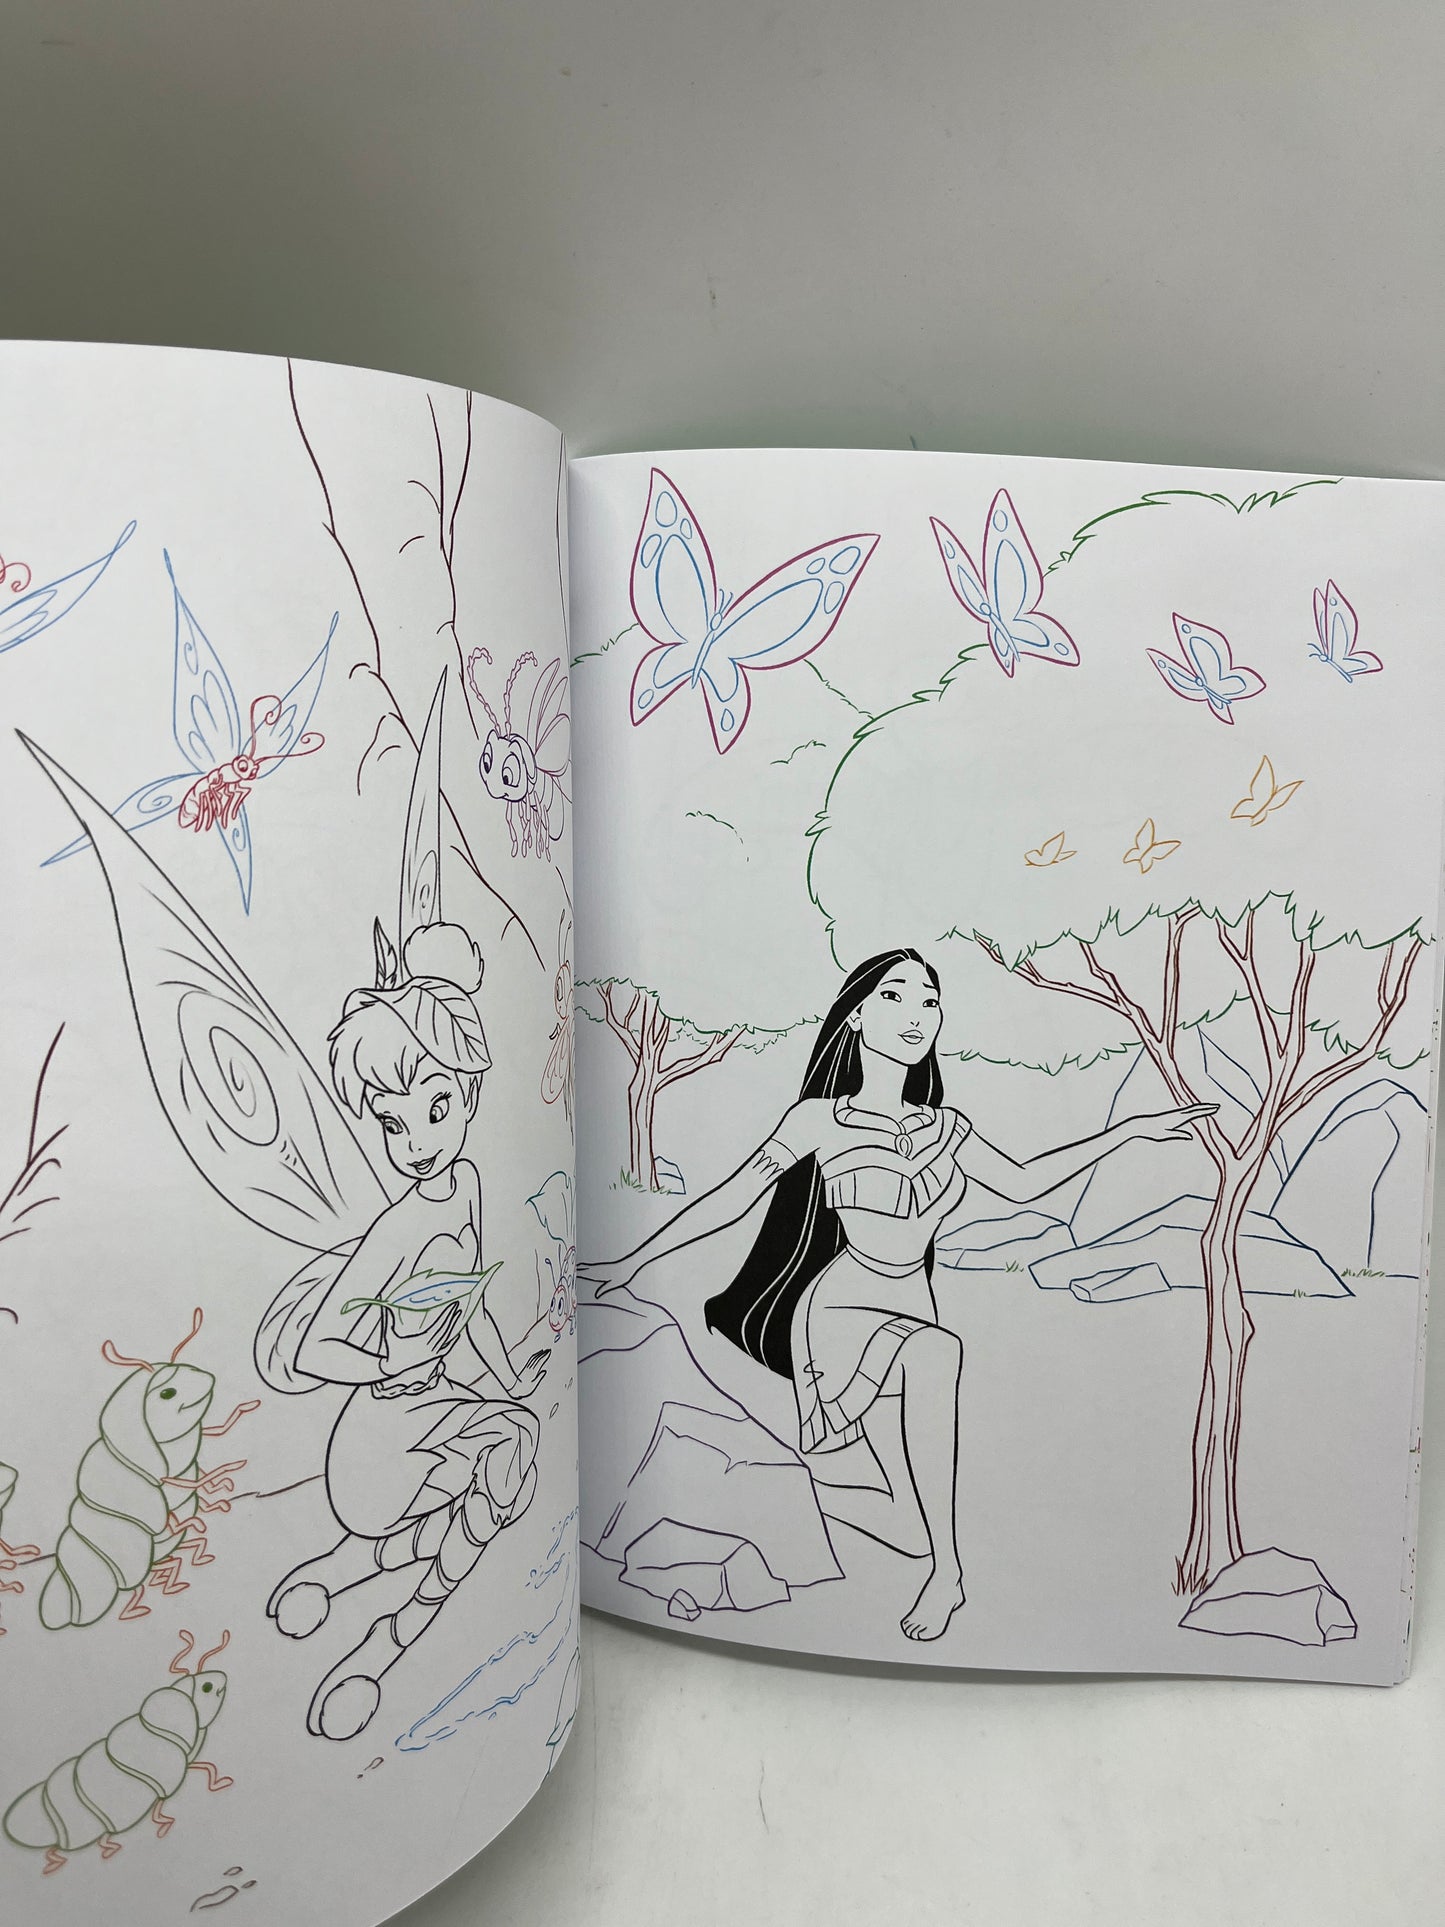 Magazine livre d’activité Disney Mes jolis coloriages thème La Forêt activité Neuf